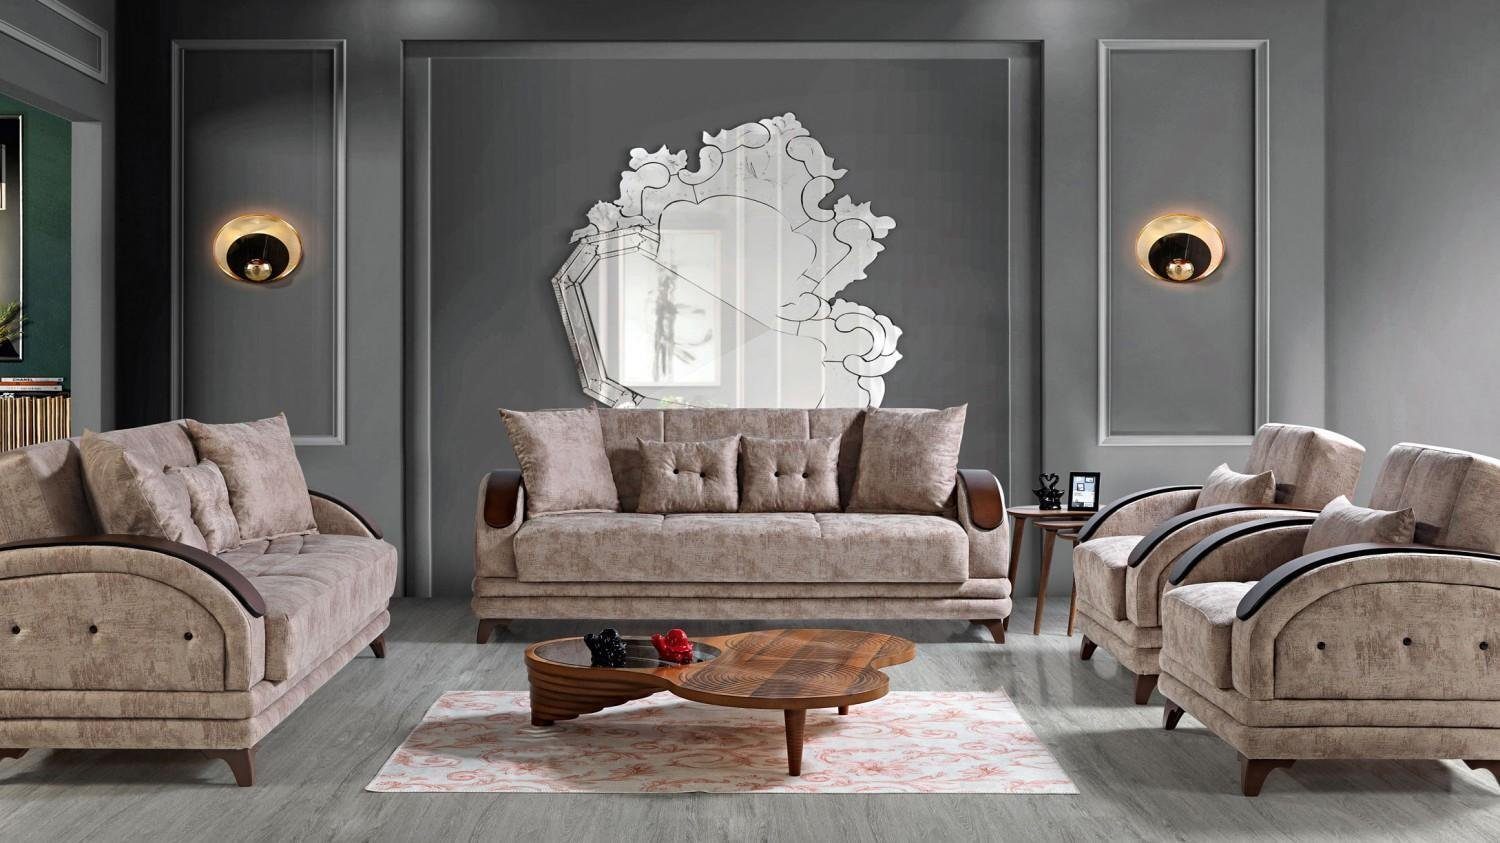 JVmoebel Wohnzimmer-Set Sofagarnitur 3+2+1+1 Holz Wohnzimmer Luxus Sofa Modern Stoff Komplett, (3 Sitzer / 2 Sitzer / 2x Sessel), Made In Europe